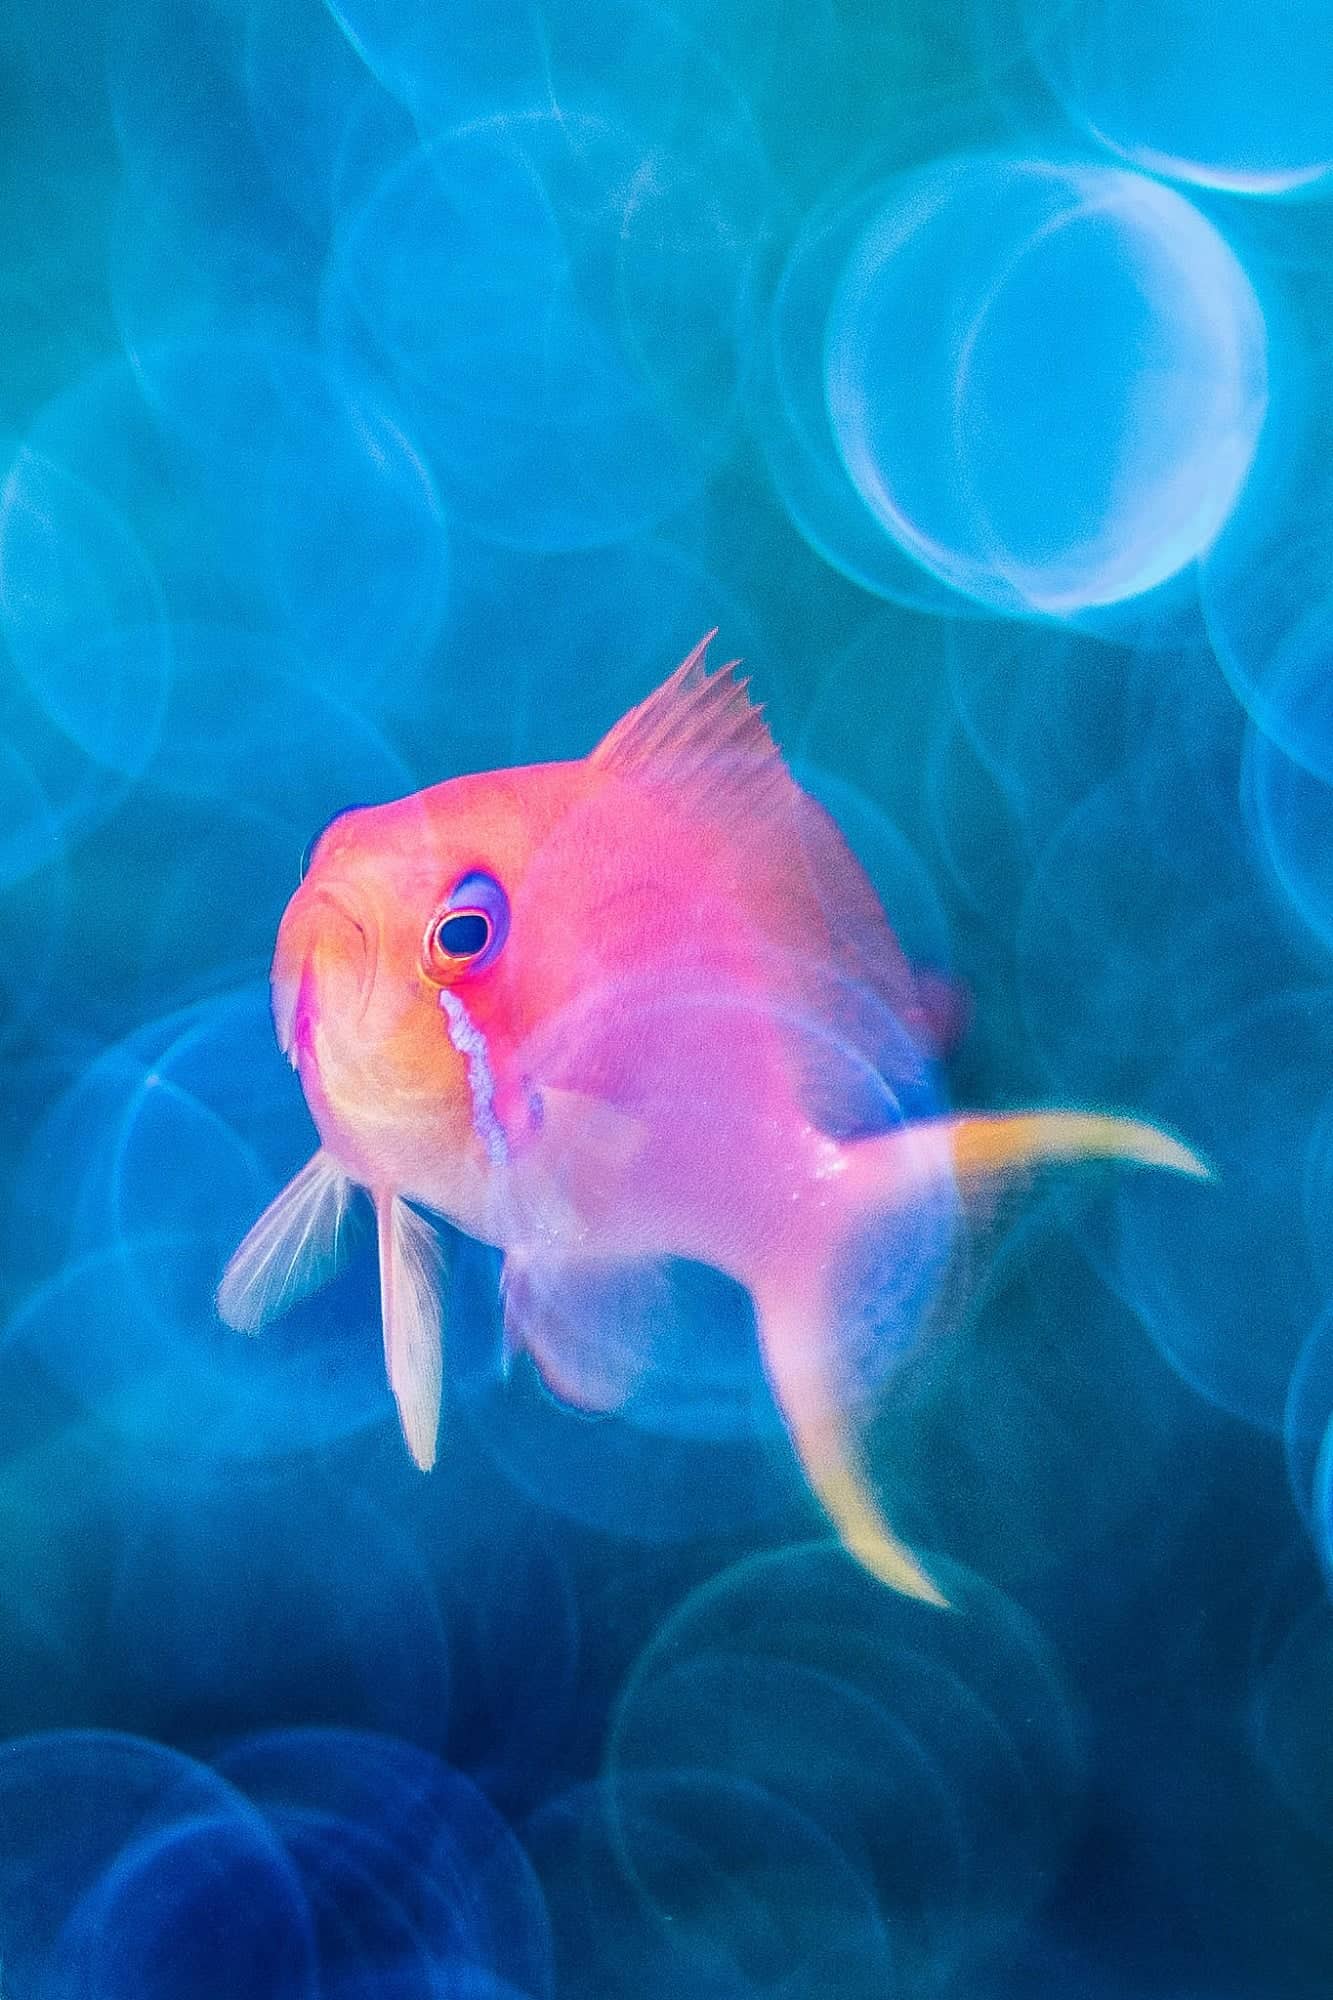 صورة مشاركة في مسابقة التصوير الفوتوغرافي تظهر أسماكاً وردية وأرجوانية في البحر الأحمر.